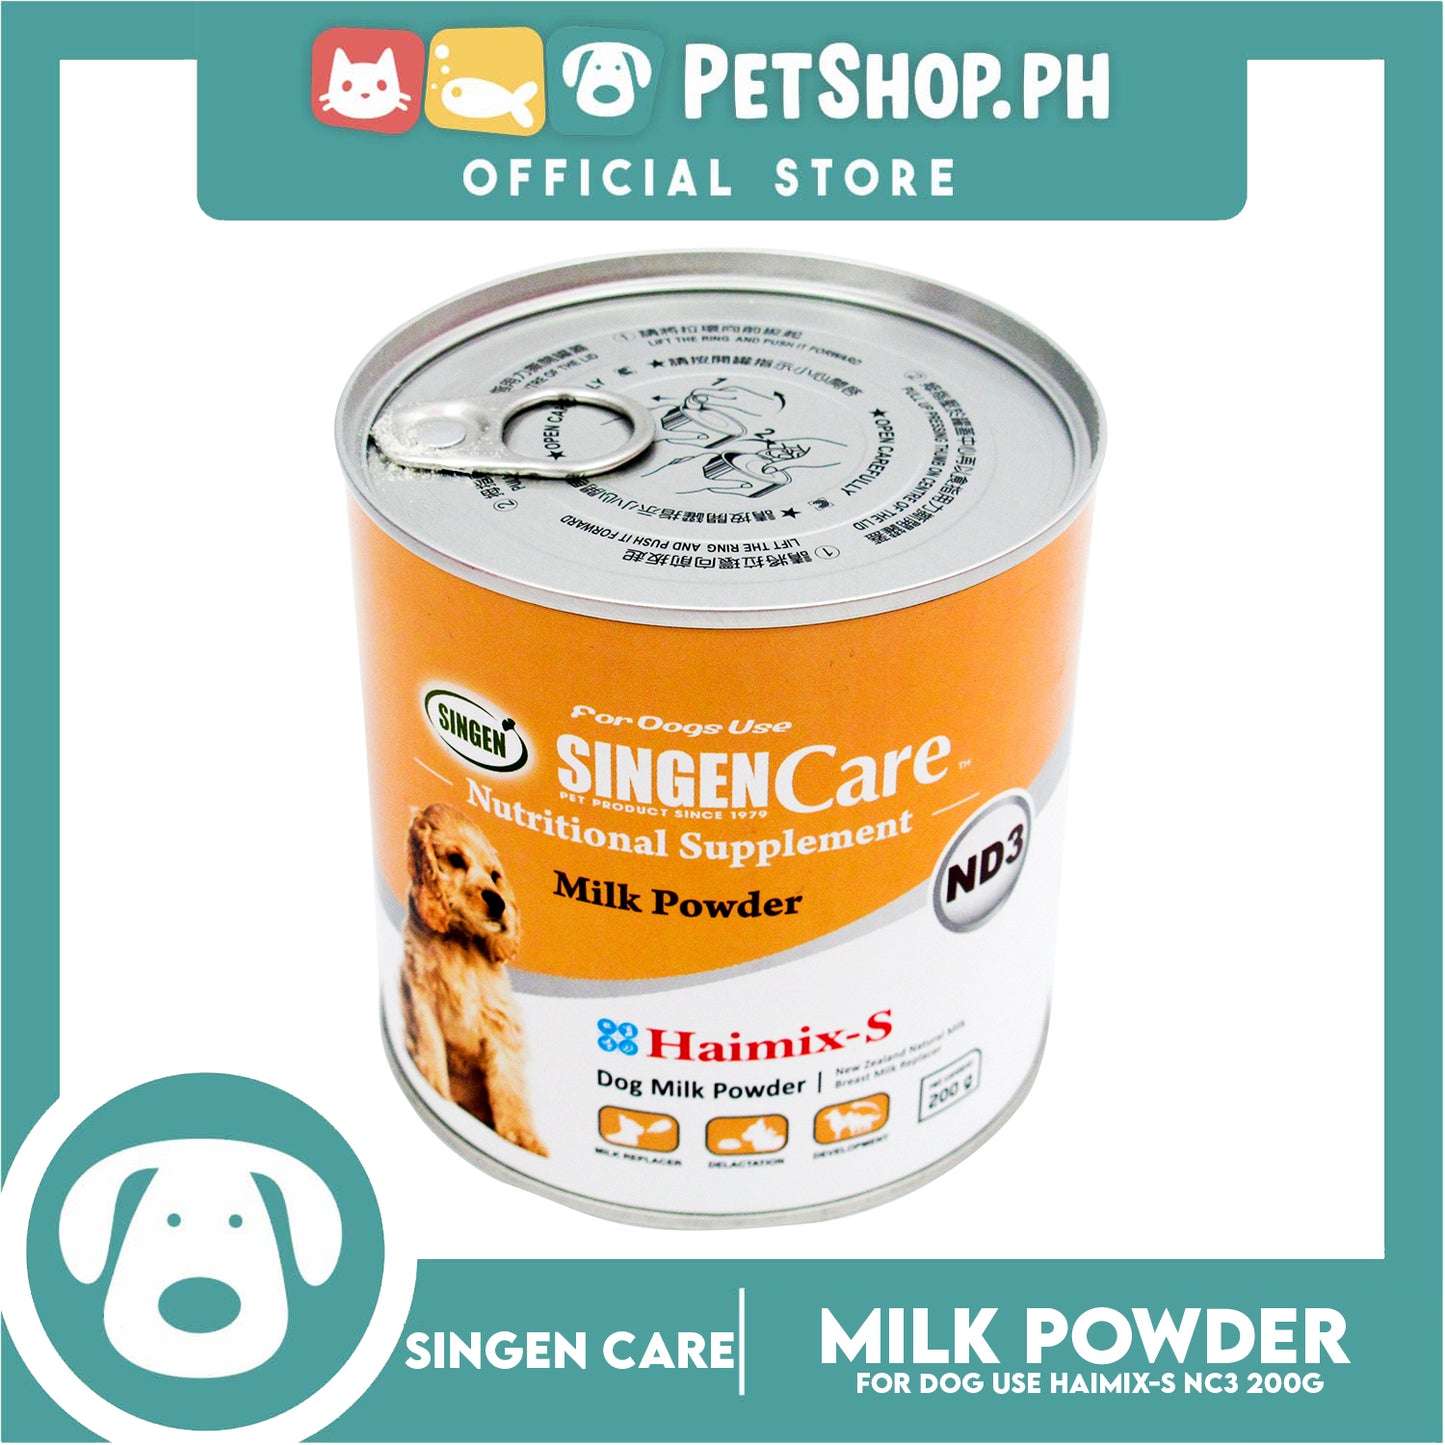 Singen Care Nutritional Supplement ND3 Milk Powder 200g Dog Milk Powder